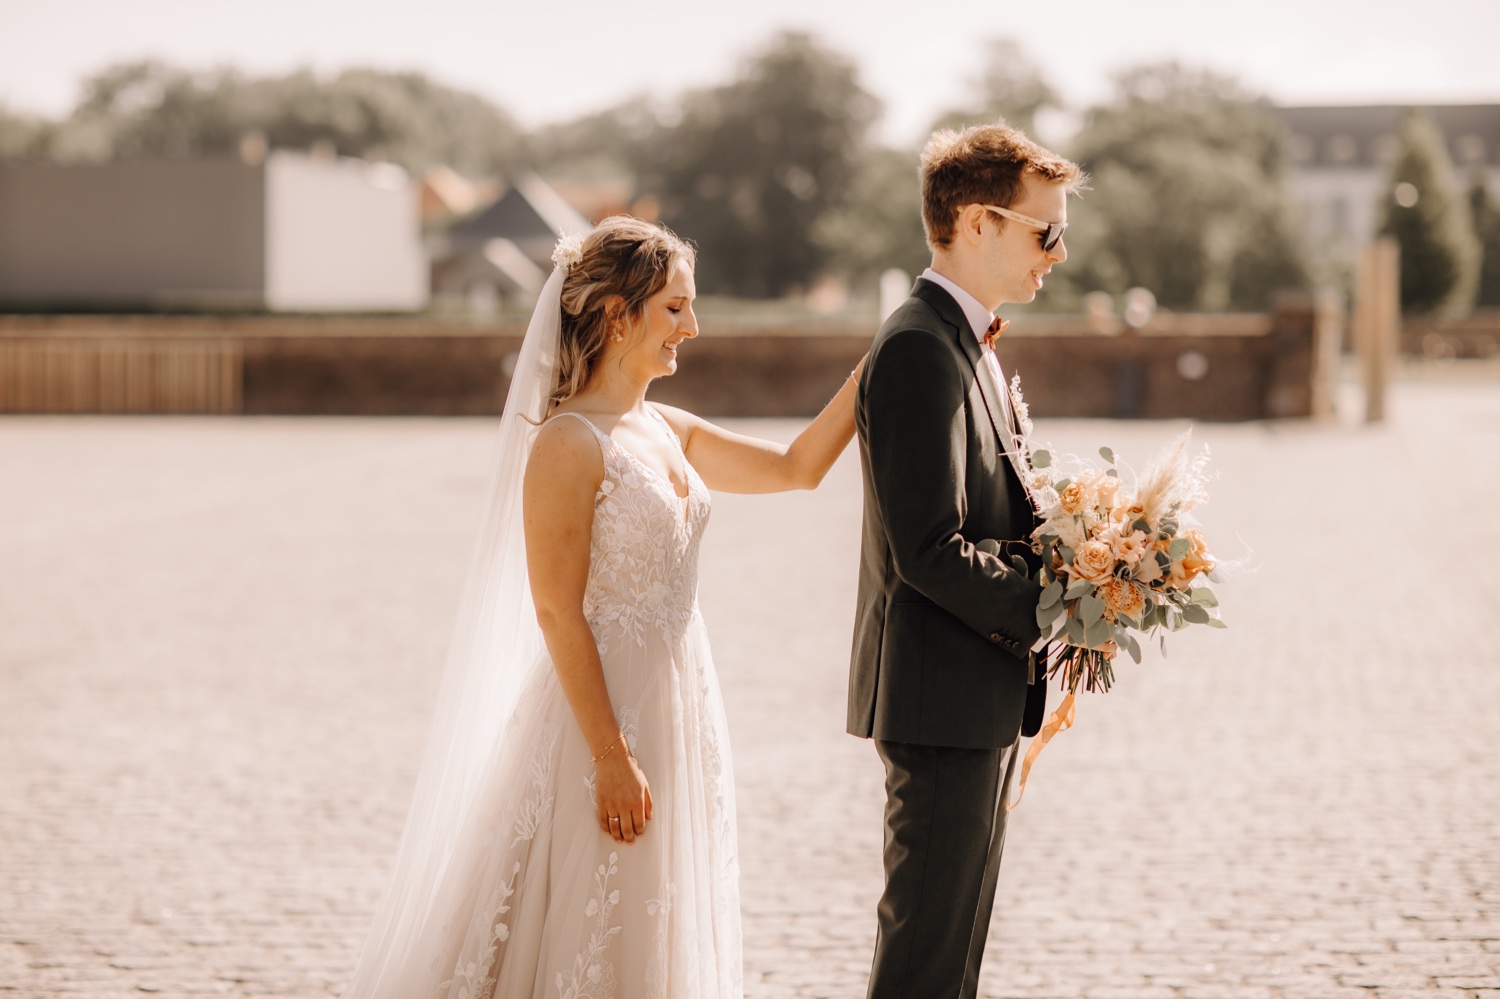 Huwelijksfotograaf Limburg - bruid legt haar hand op zijn schouder bij first look